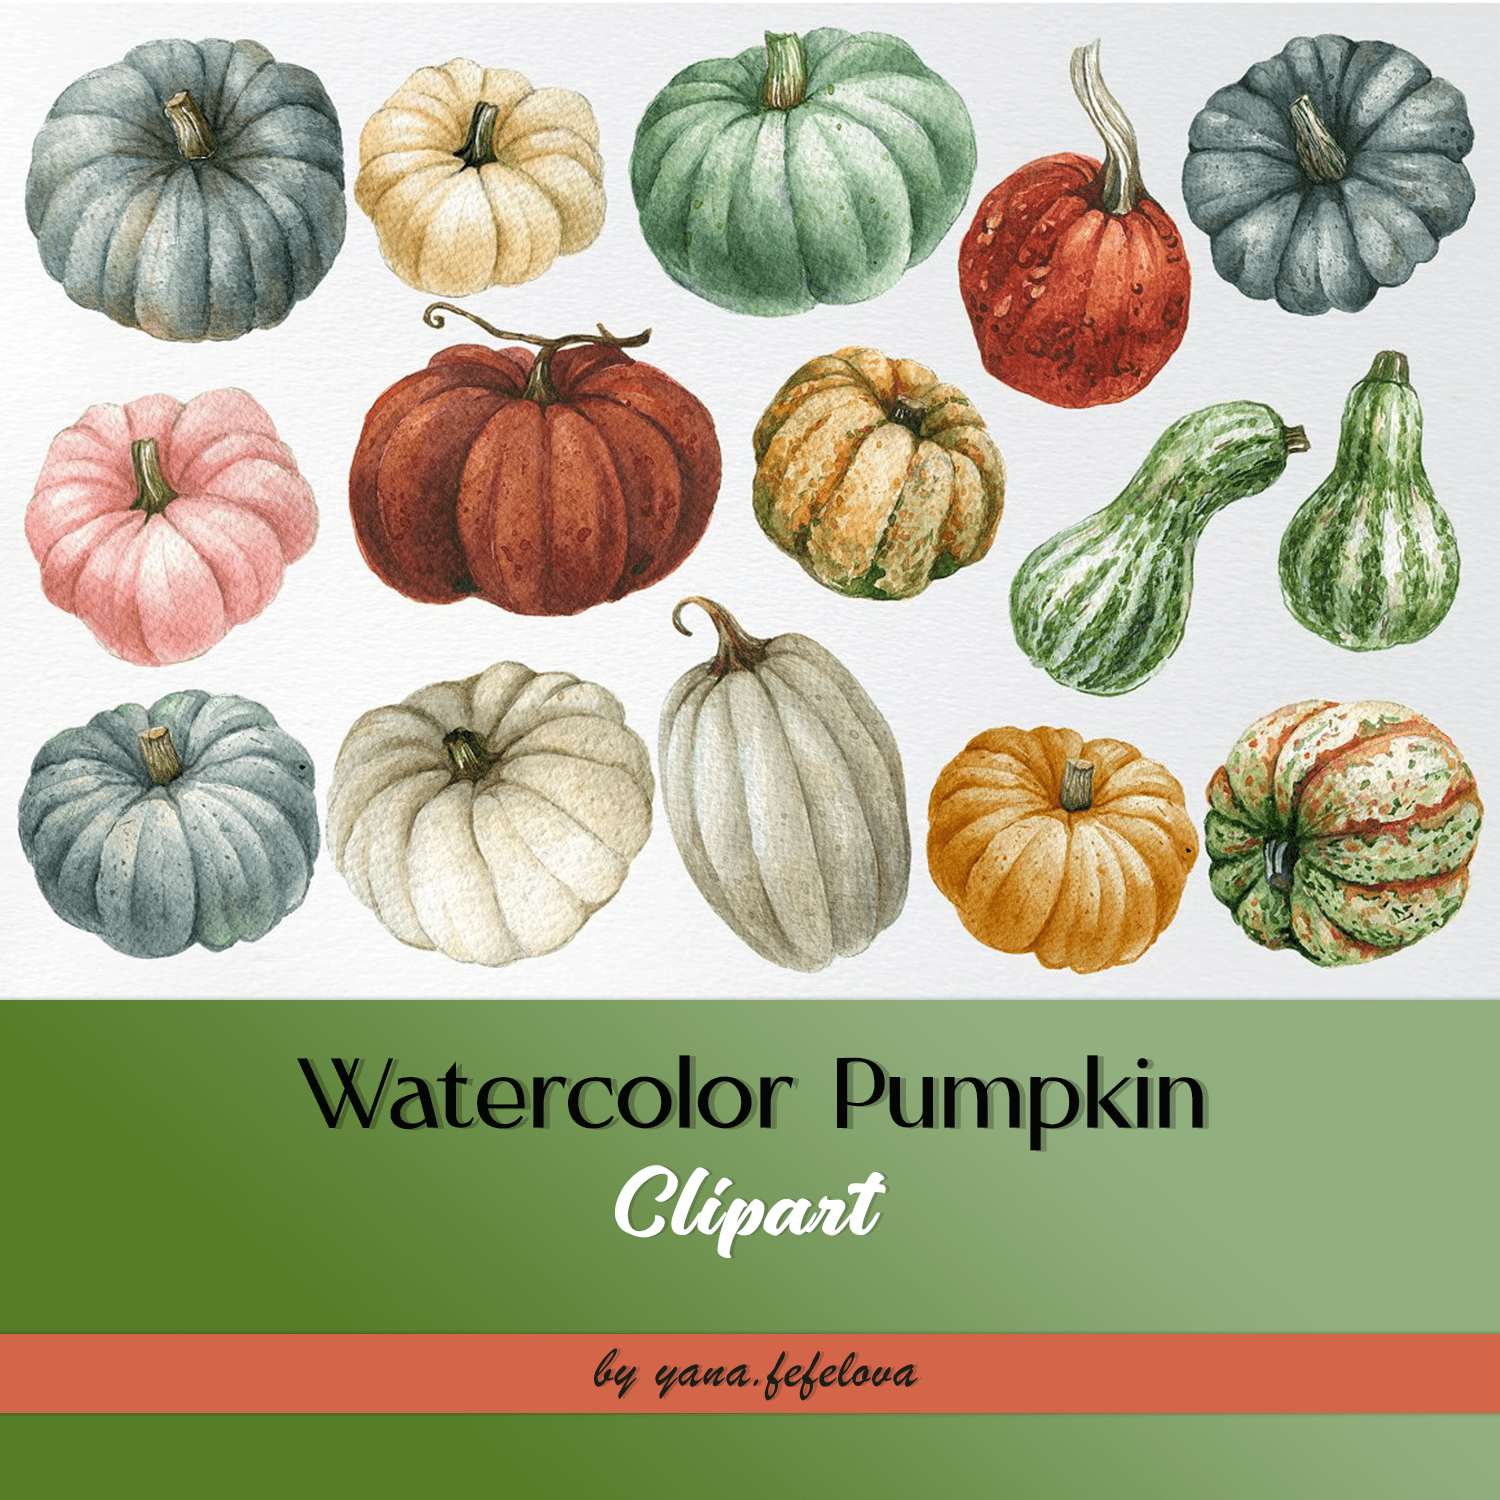 Watercolor Pumpkin Clipart cover.